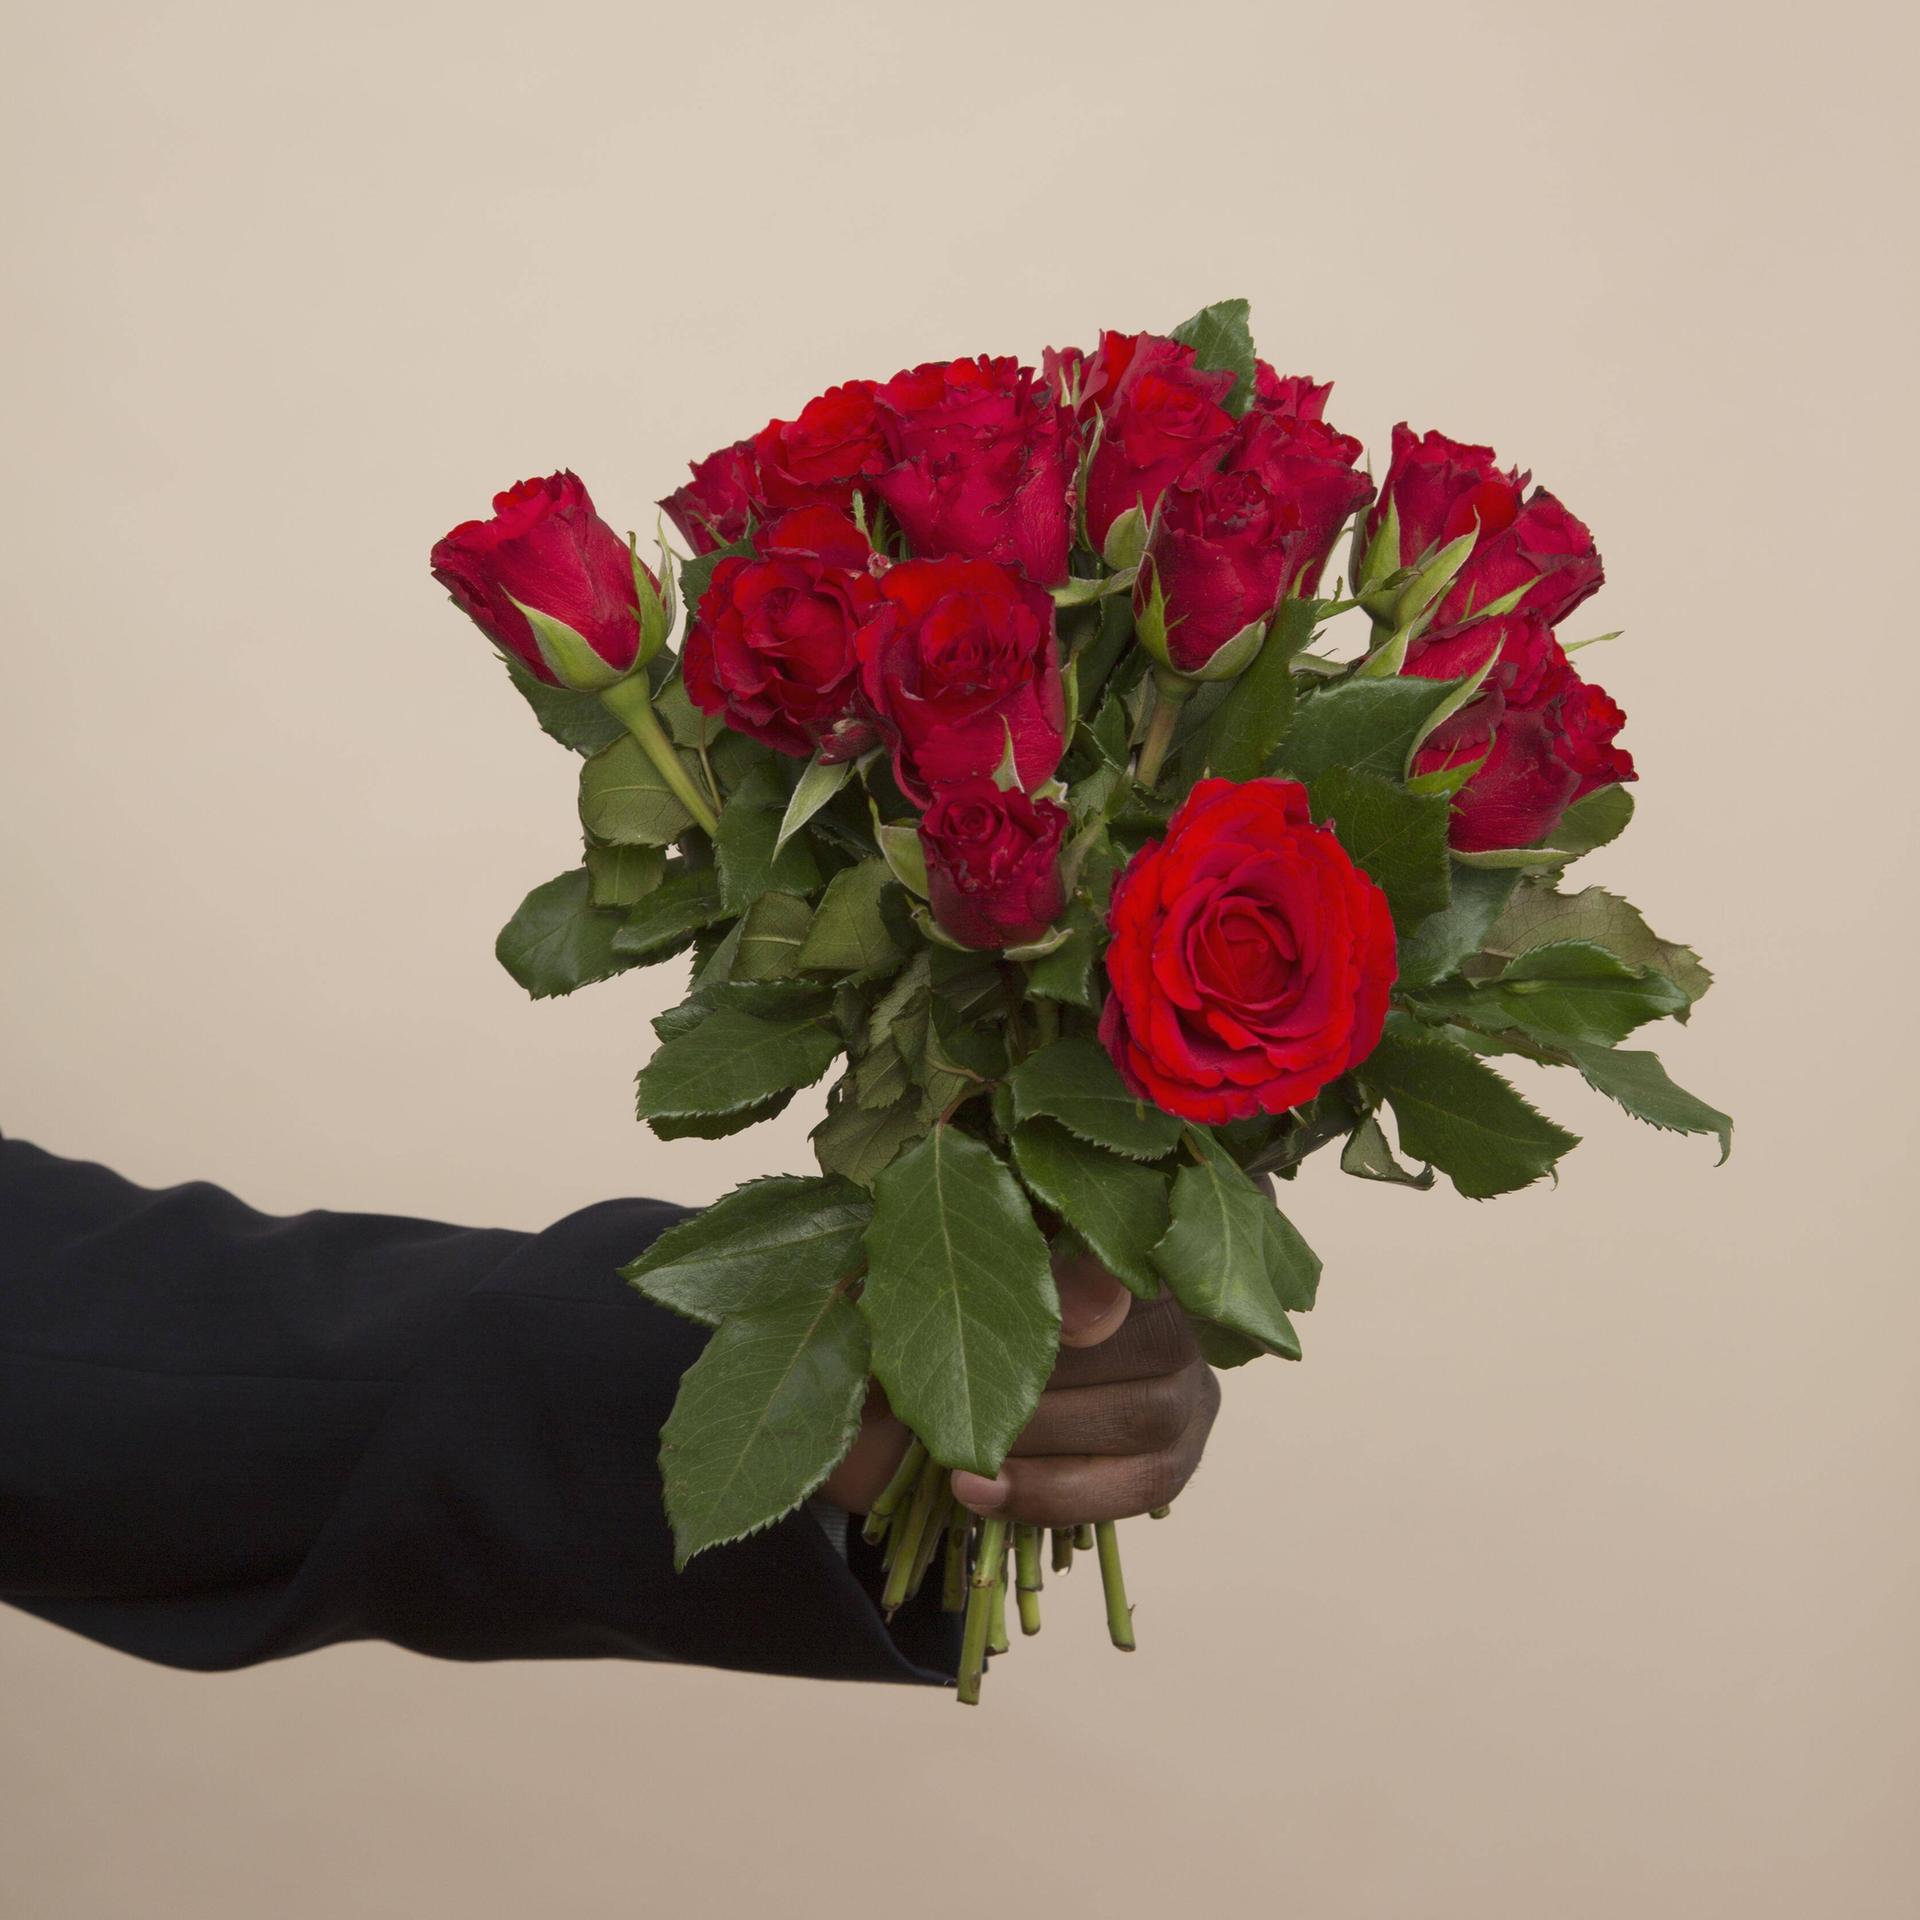 Geschenke - Sollte man wirklich noch Blumen schenken?